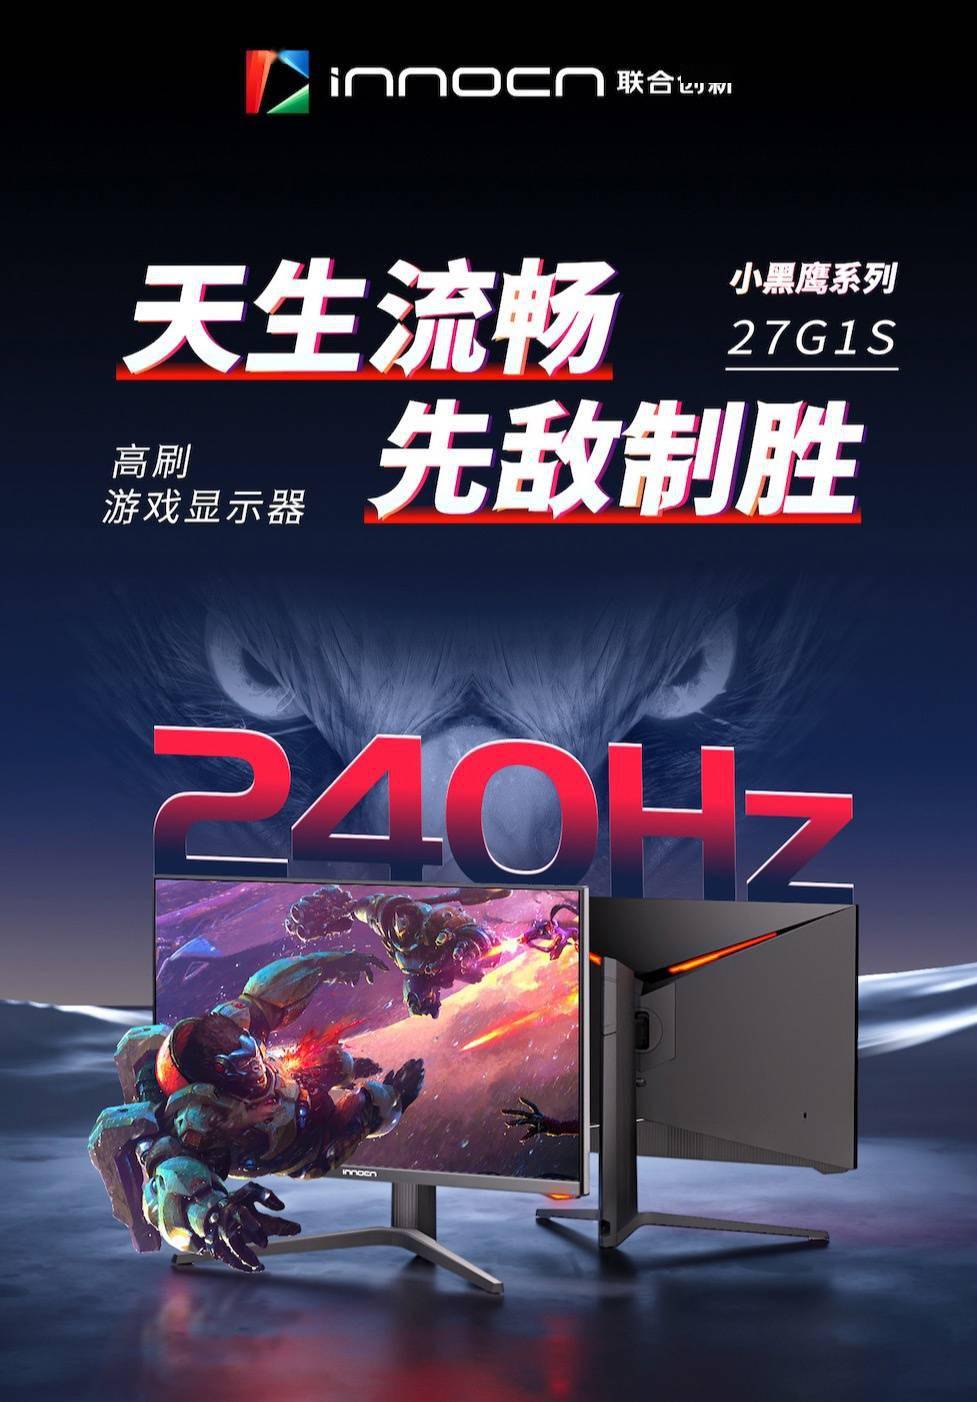 联合创新推出 27G1S 显示器      27 英寸 QHD 240Hz 规格，首发 1499 元